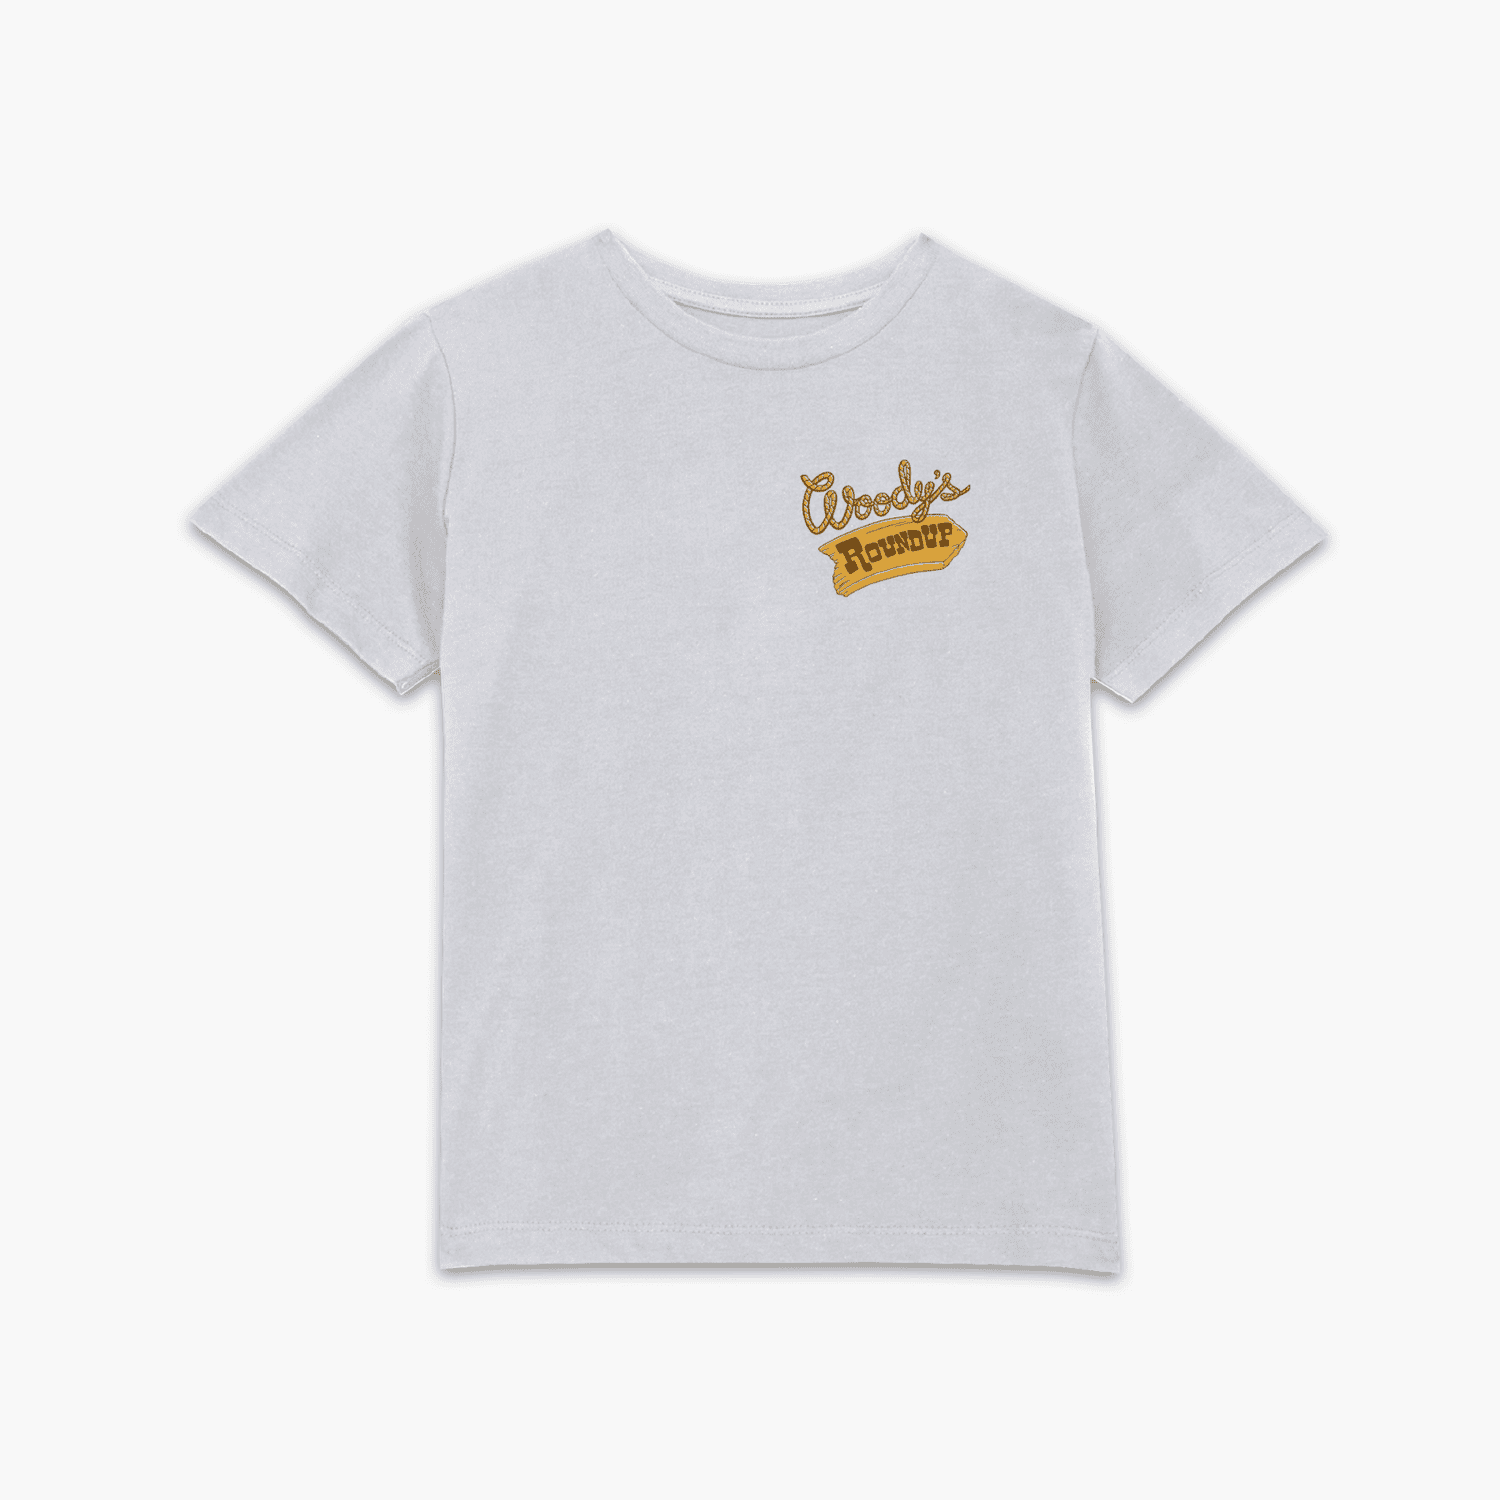 Camiseta para niño Woody's Round Up de Toy Story - Blanco